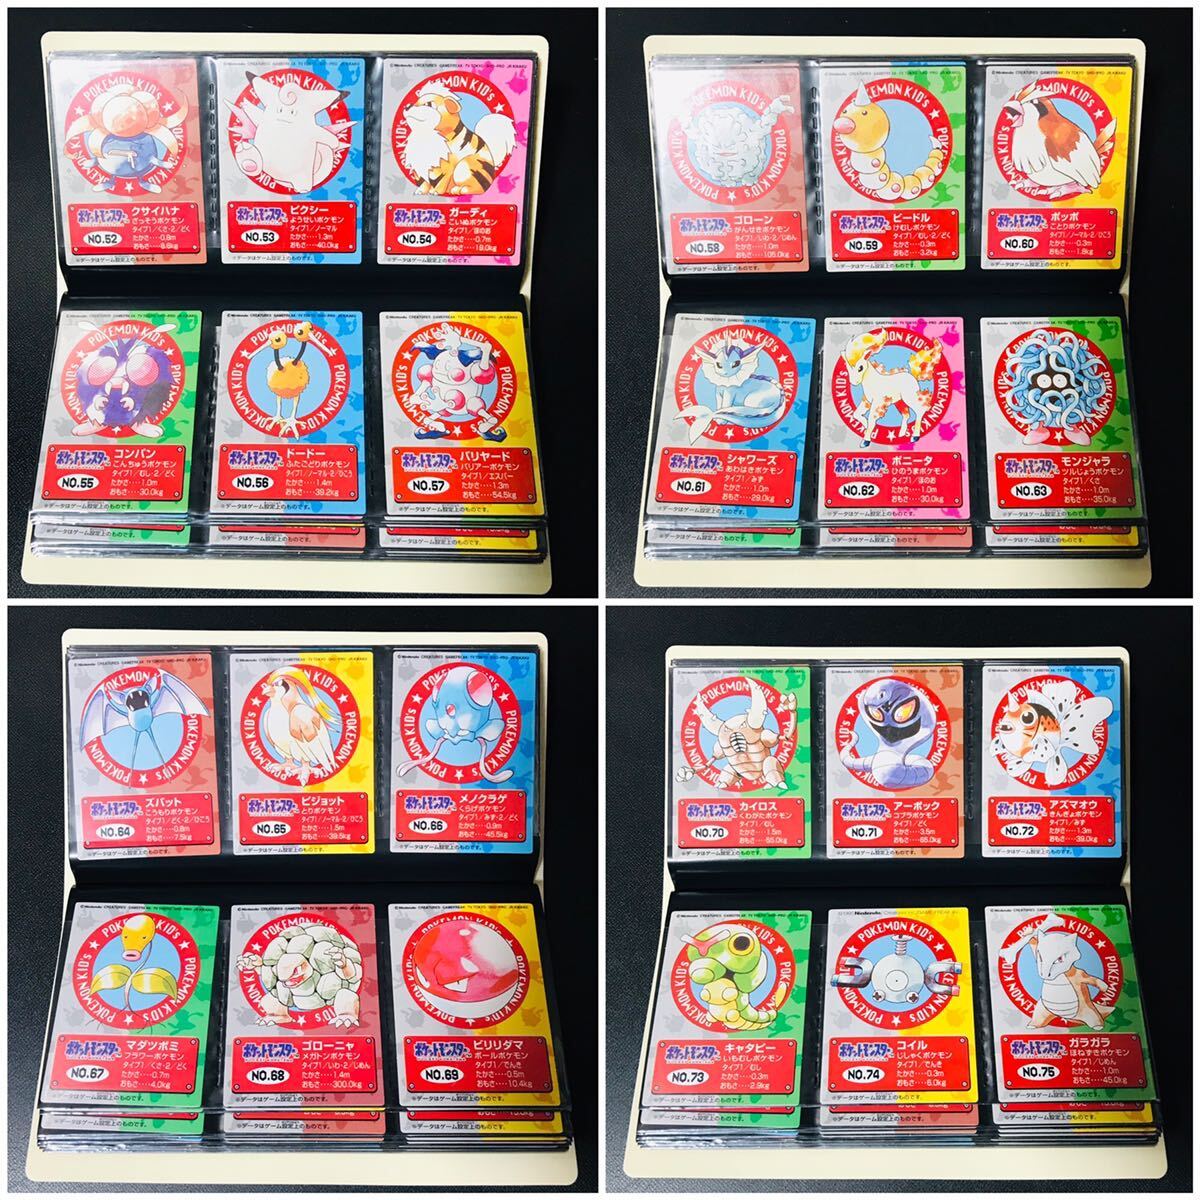 ポケモンキッズ カードダス 全151種類 フルコンプ No.1〜151 Pokemon complete set Charizard card リザードン 1996年〜 Beauty products_画像4